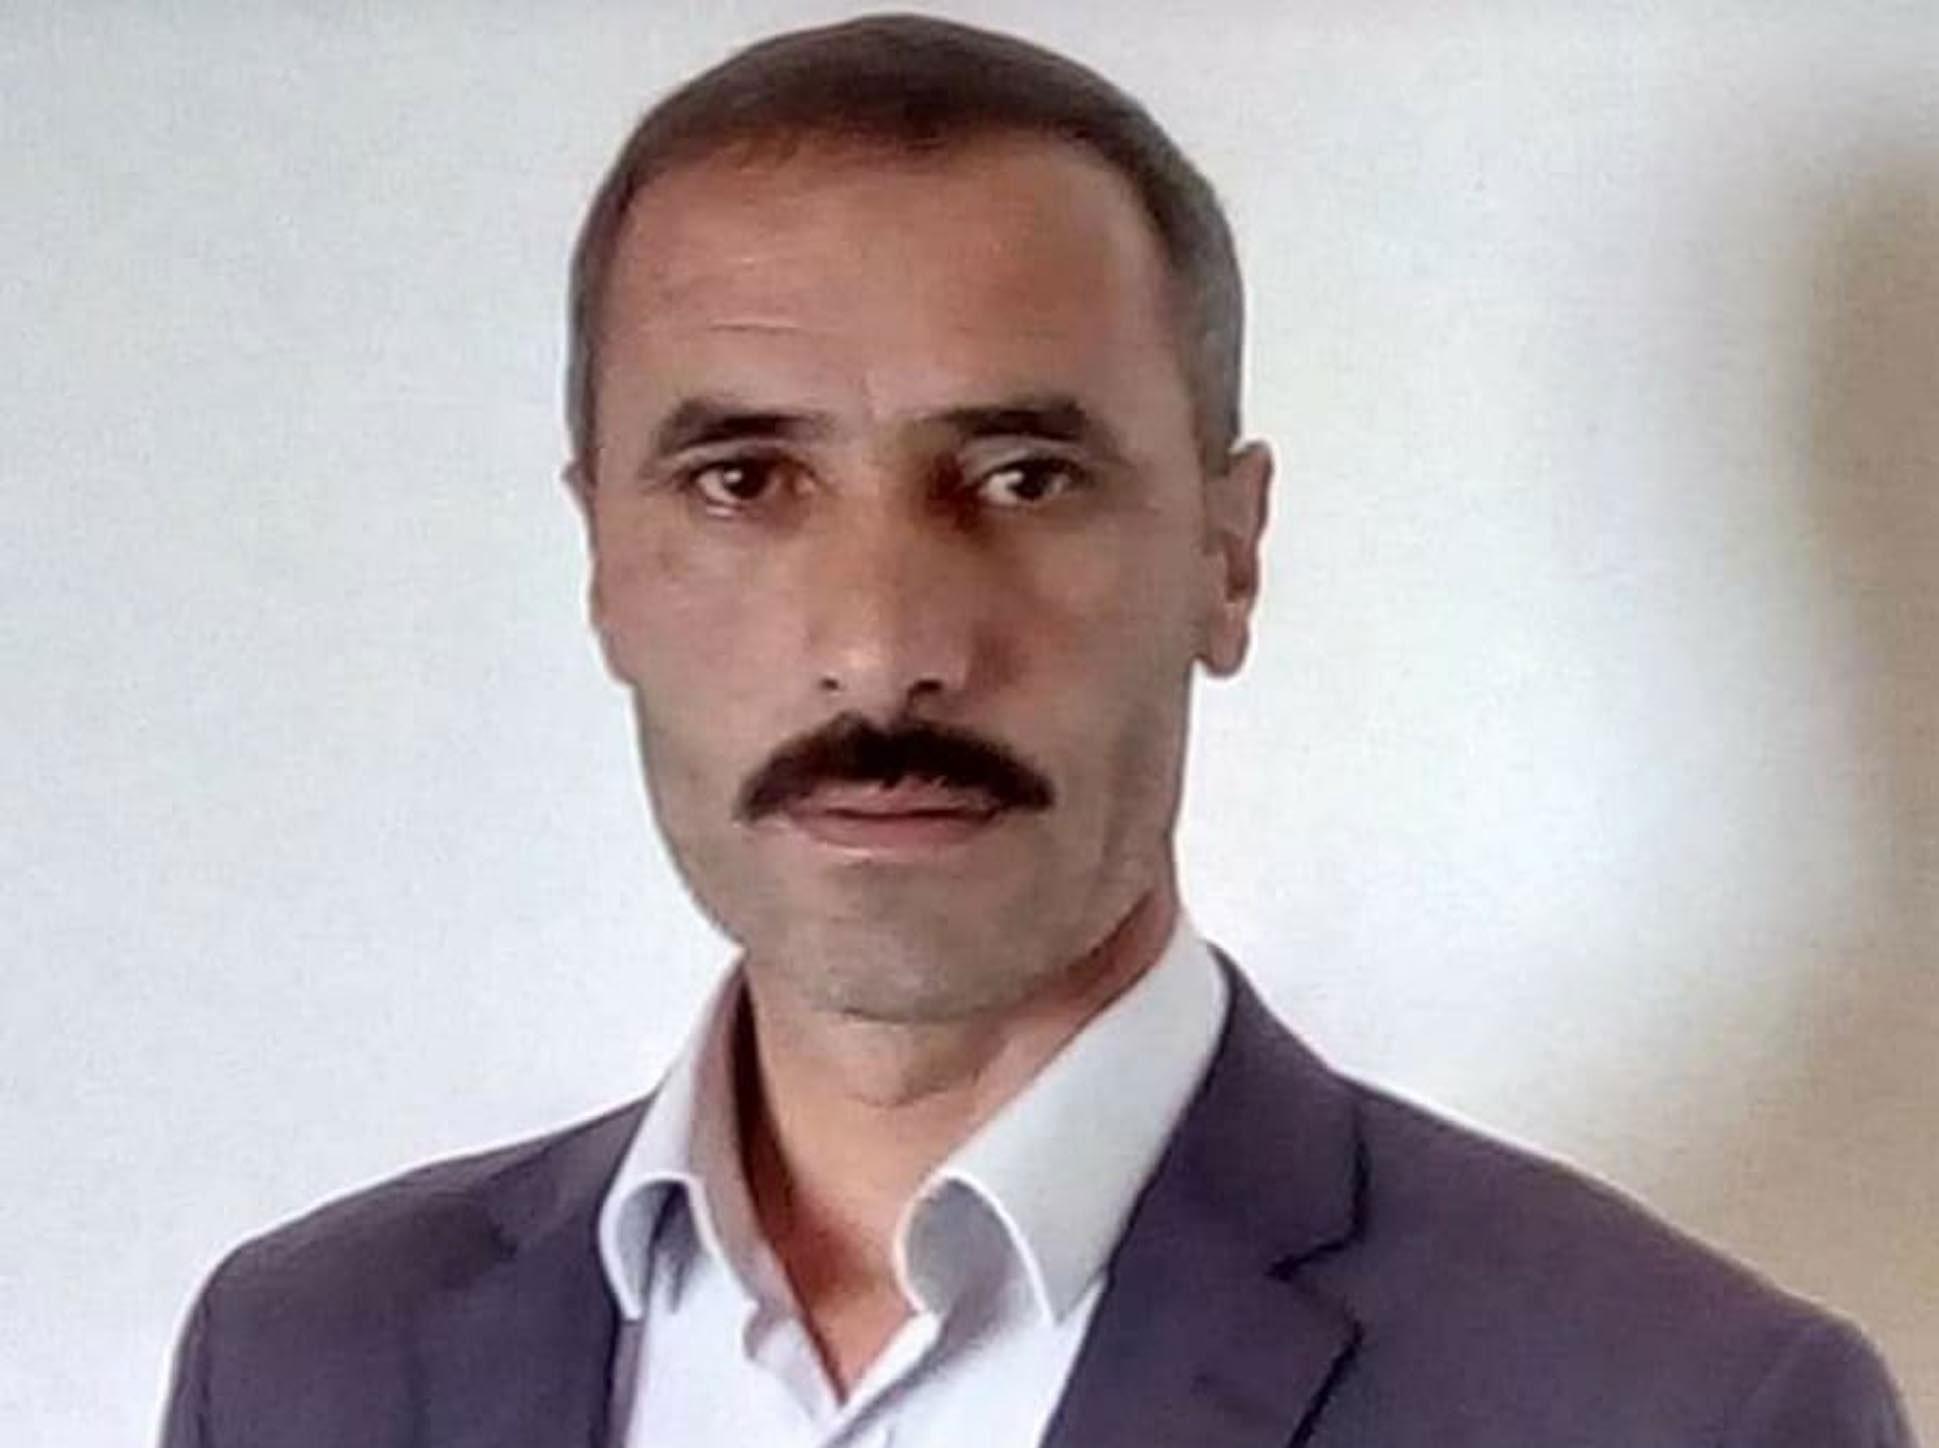 Öldürülen İYİ Parti İlçe Başkanının cenazesini almaya giden kardeşi de öldürüldü